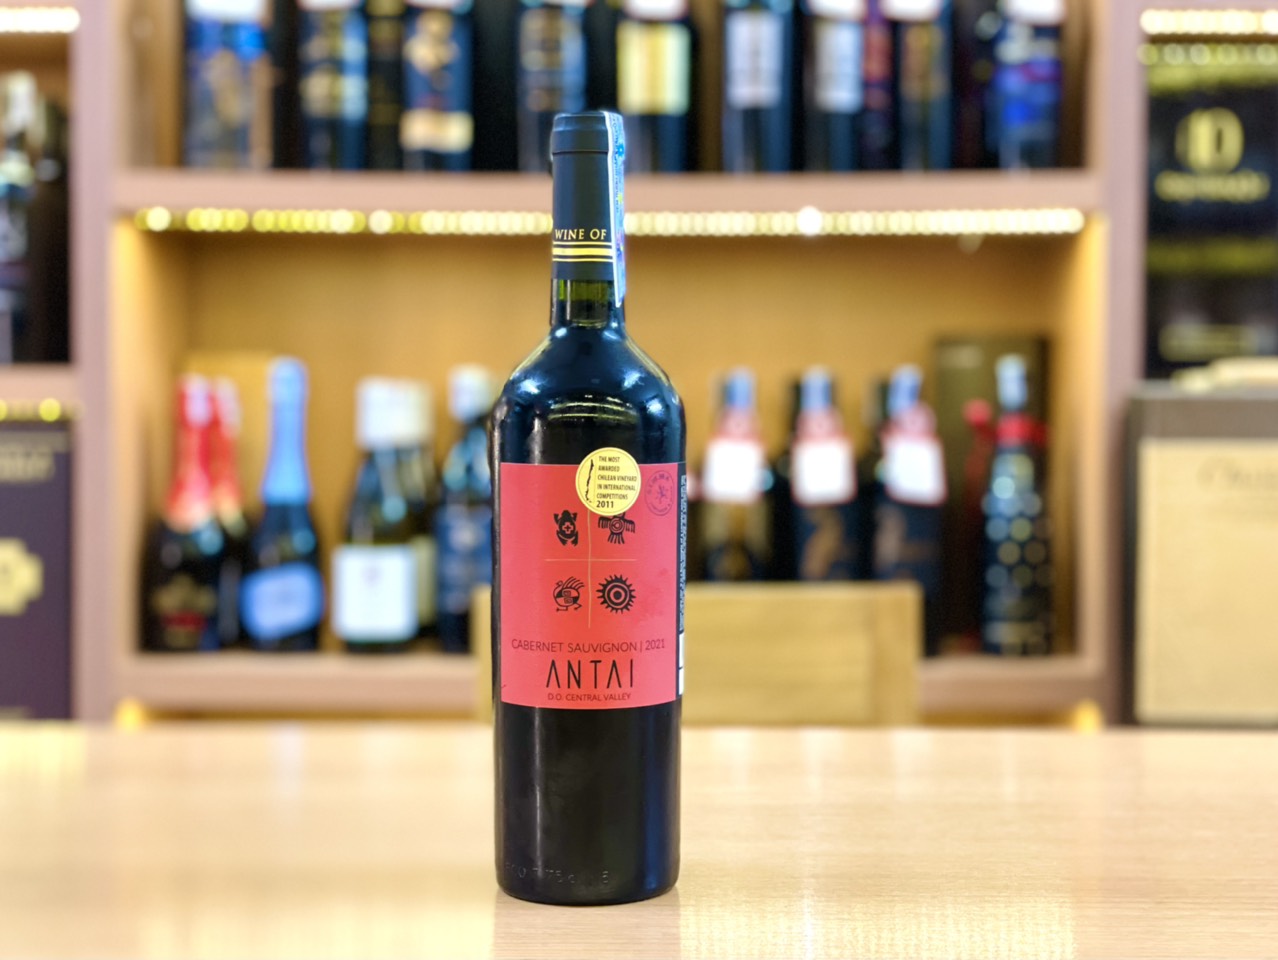 Rượu Vang Đỏ Chile ANTAI Cabernet Sauvignon có màu đỏ đậm ánh ruby khi ở trên ly. Hương thơm của đào chín, cam quýt và các loại quả chín